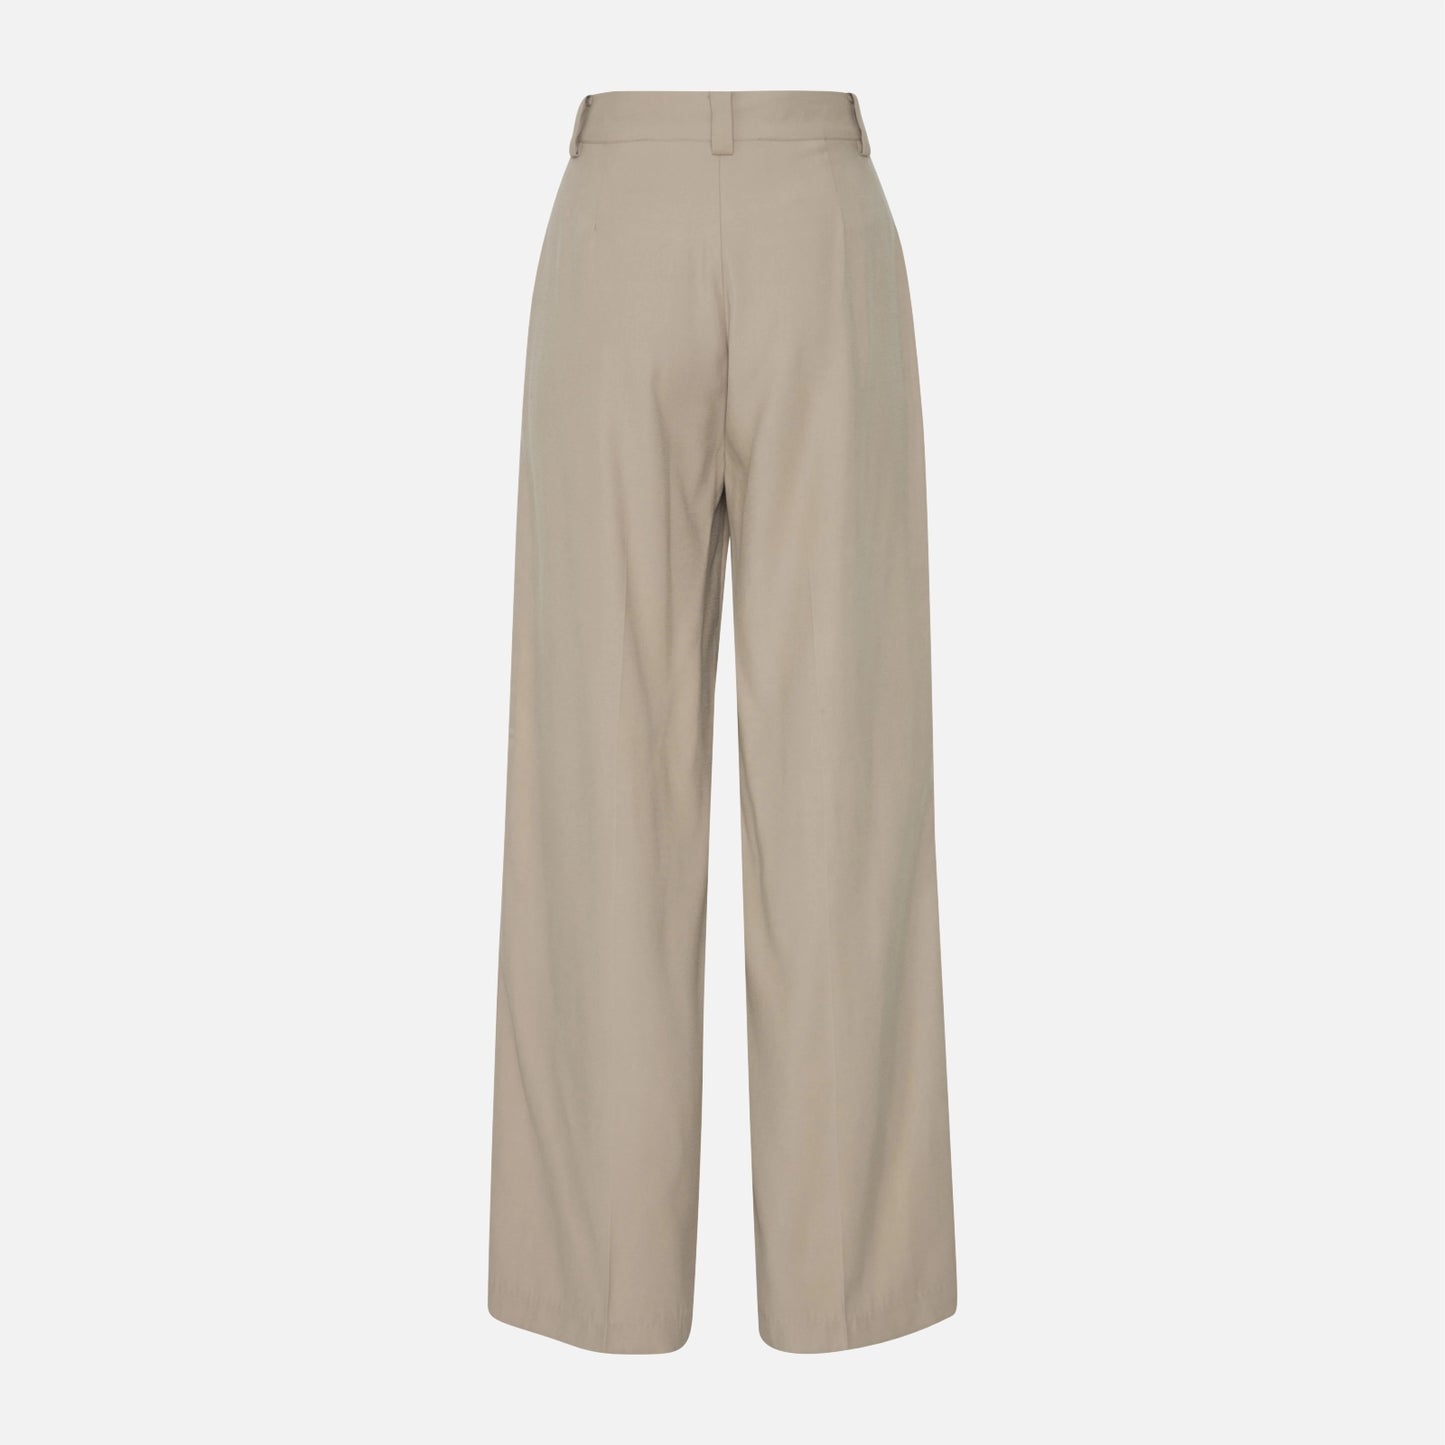 Irleono bukser fra Atelier Reve i Cobblestone (bag)